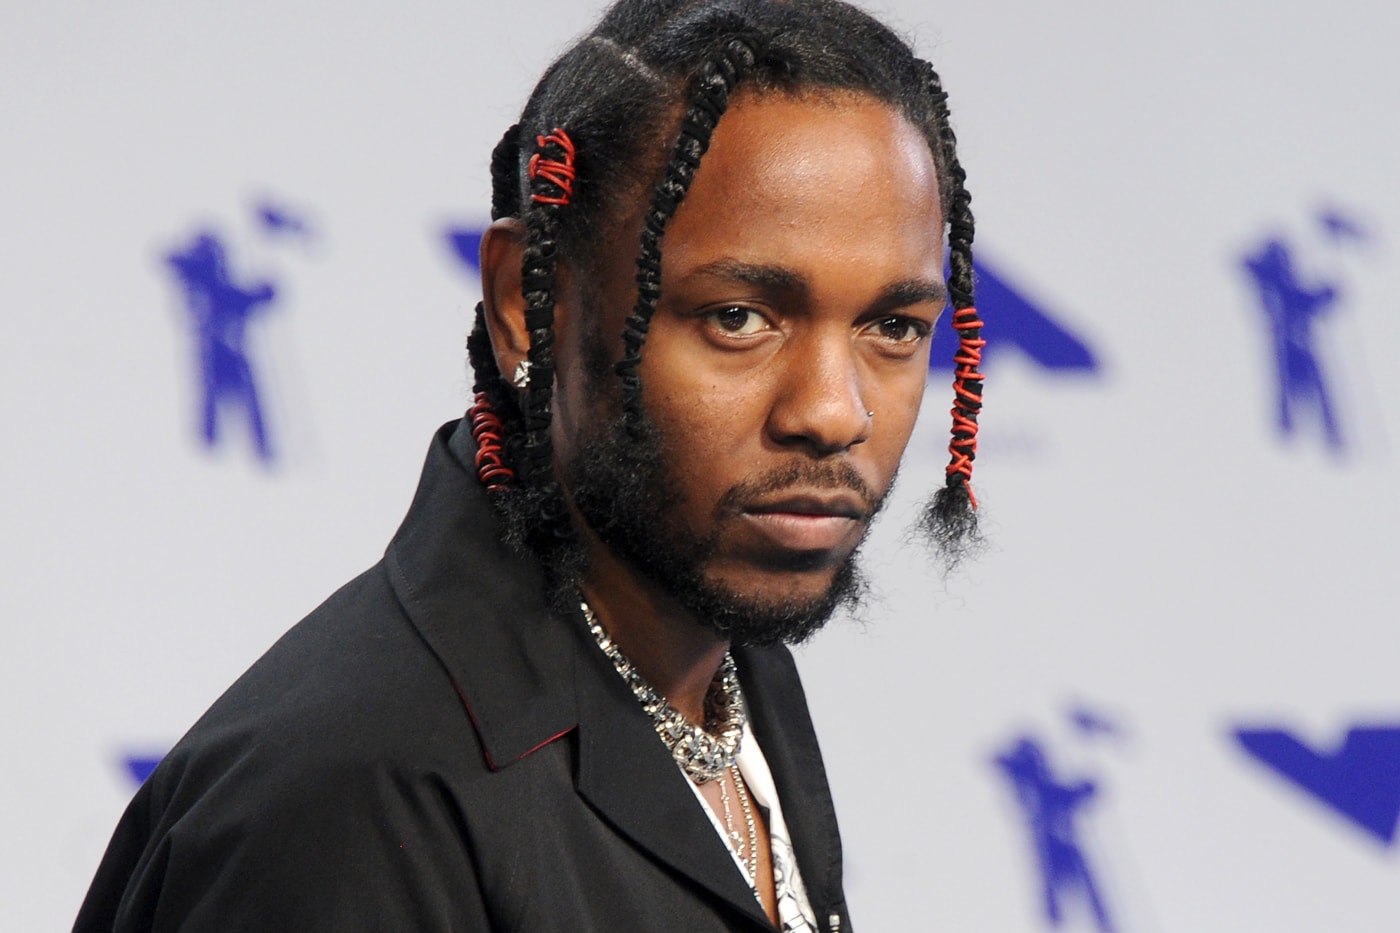 Kendrick Lamar Humble No 2 Billboard Hot 100 Highest Charting Song